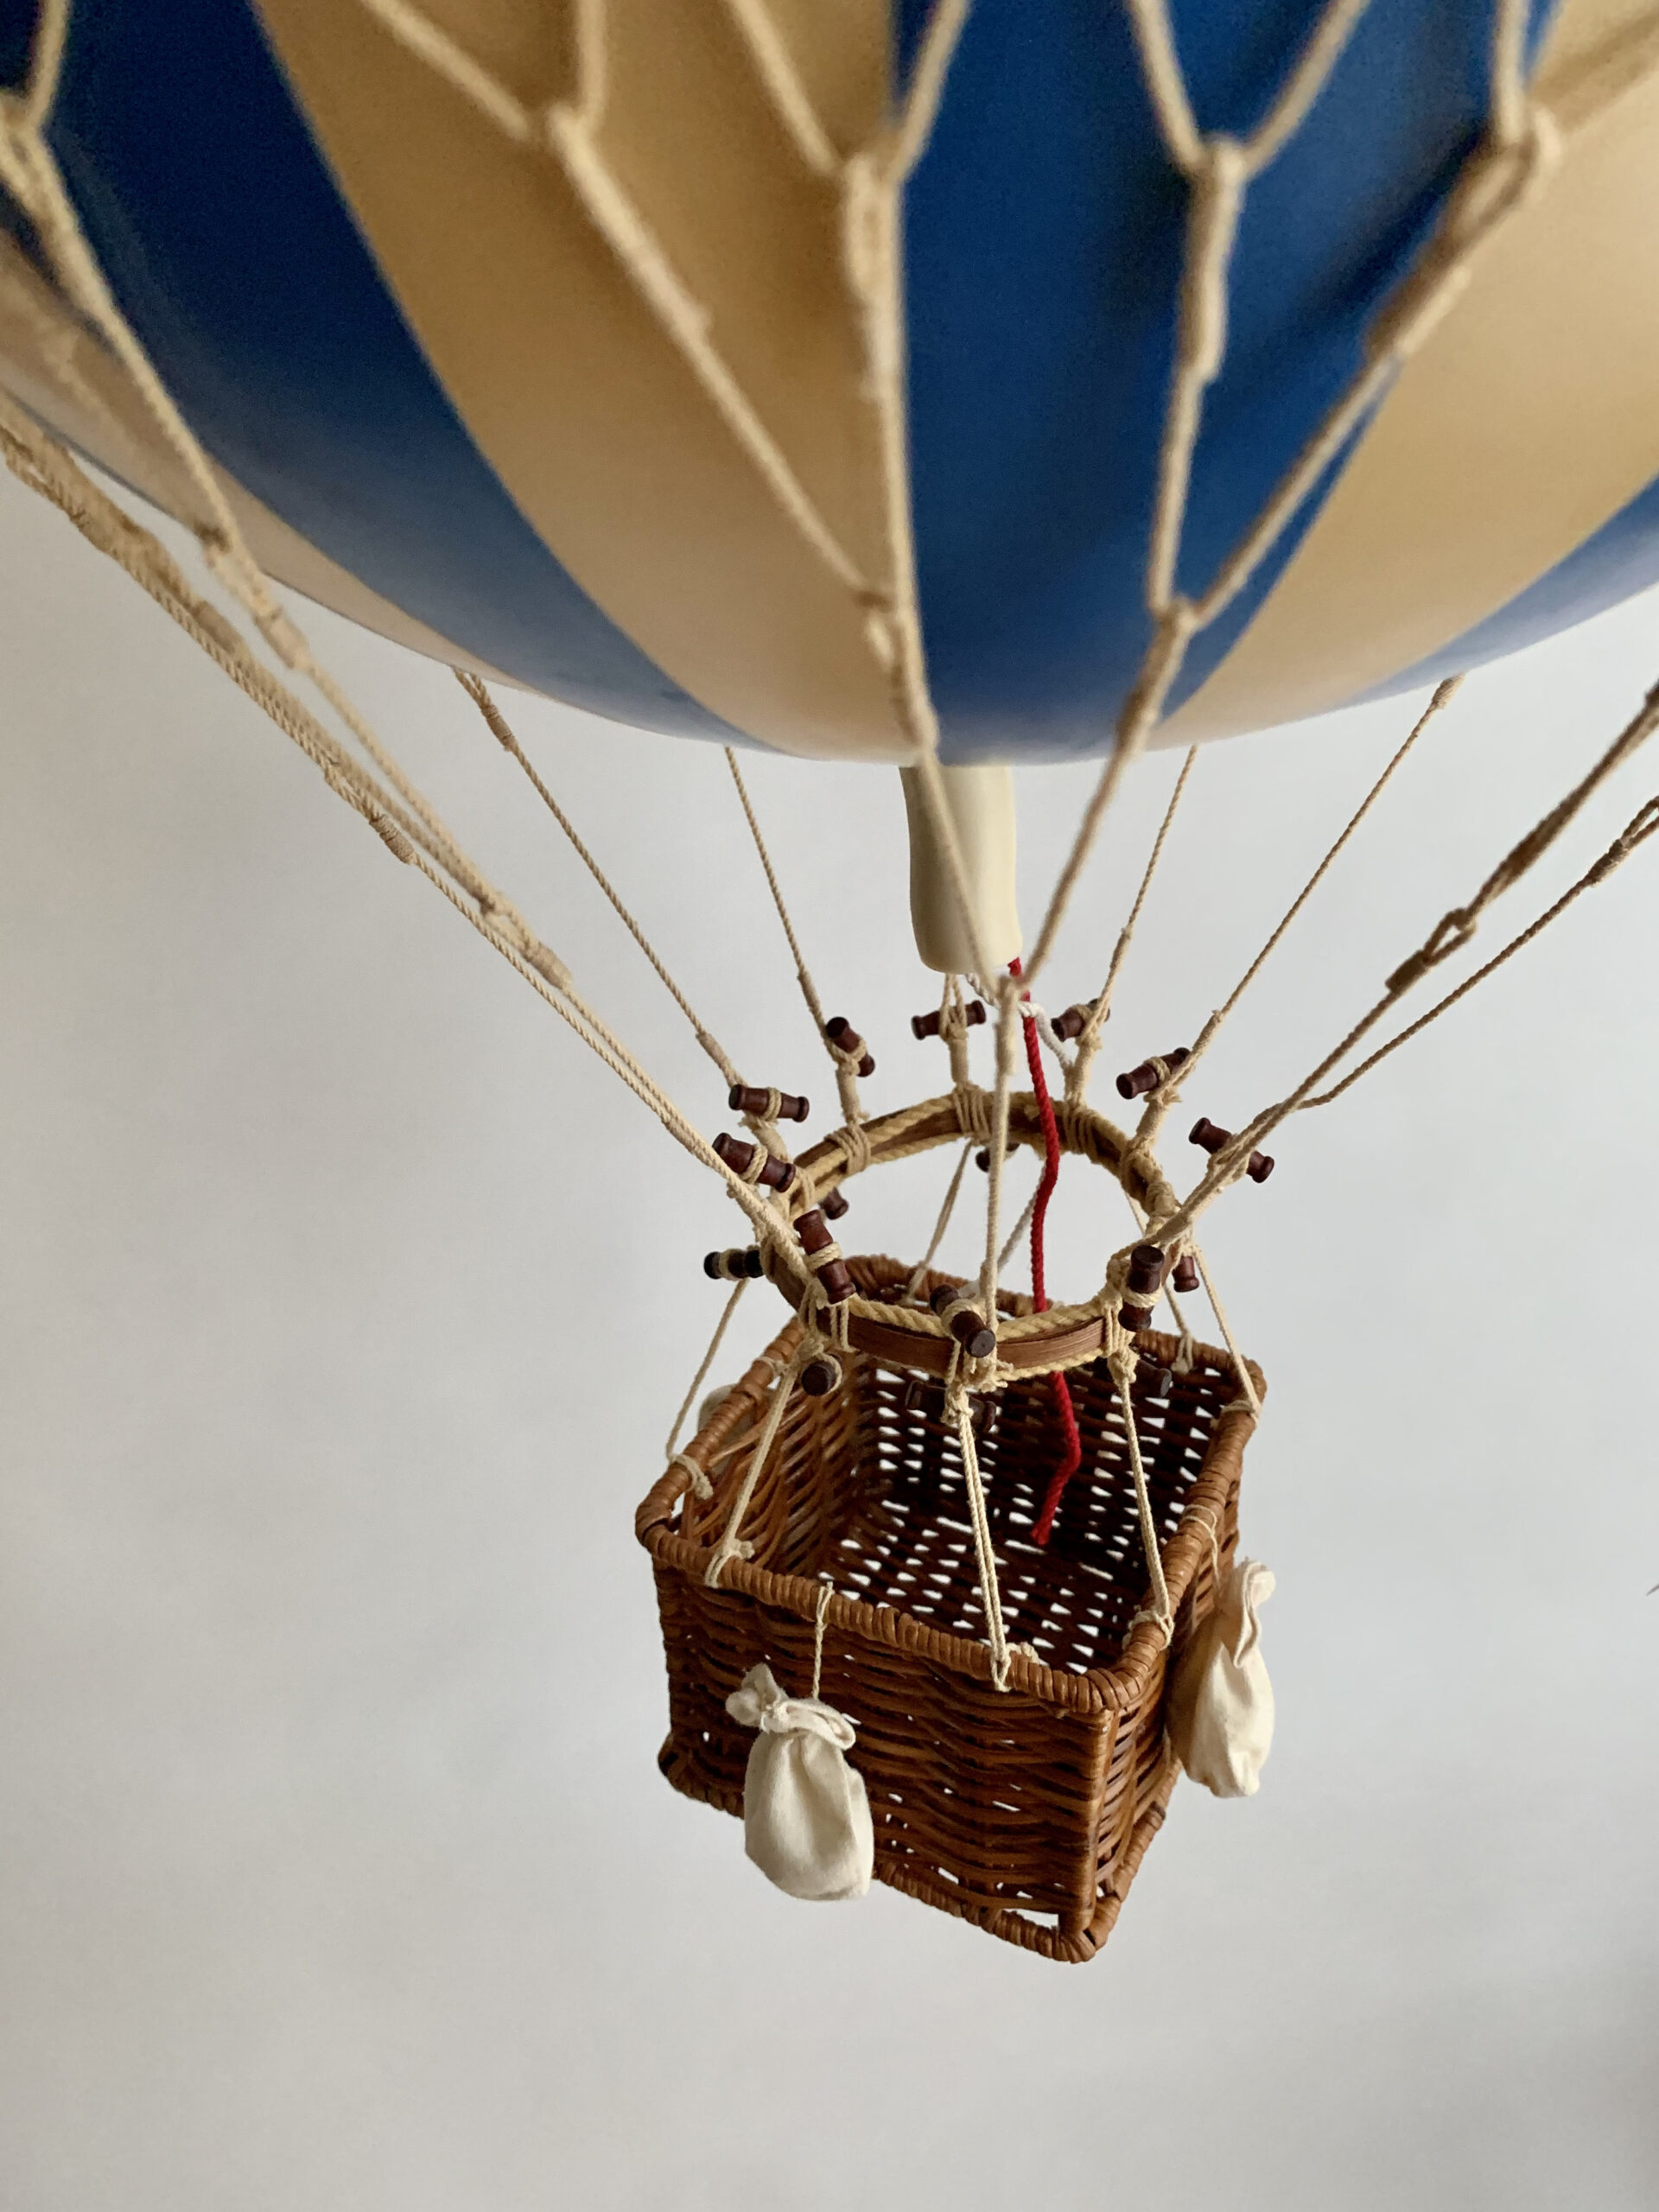 Waterproof Storage Bag Vintage Hot Air Balloons Airships Household